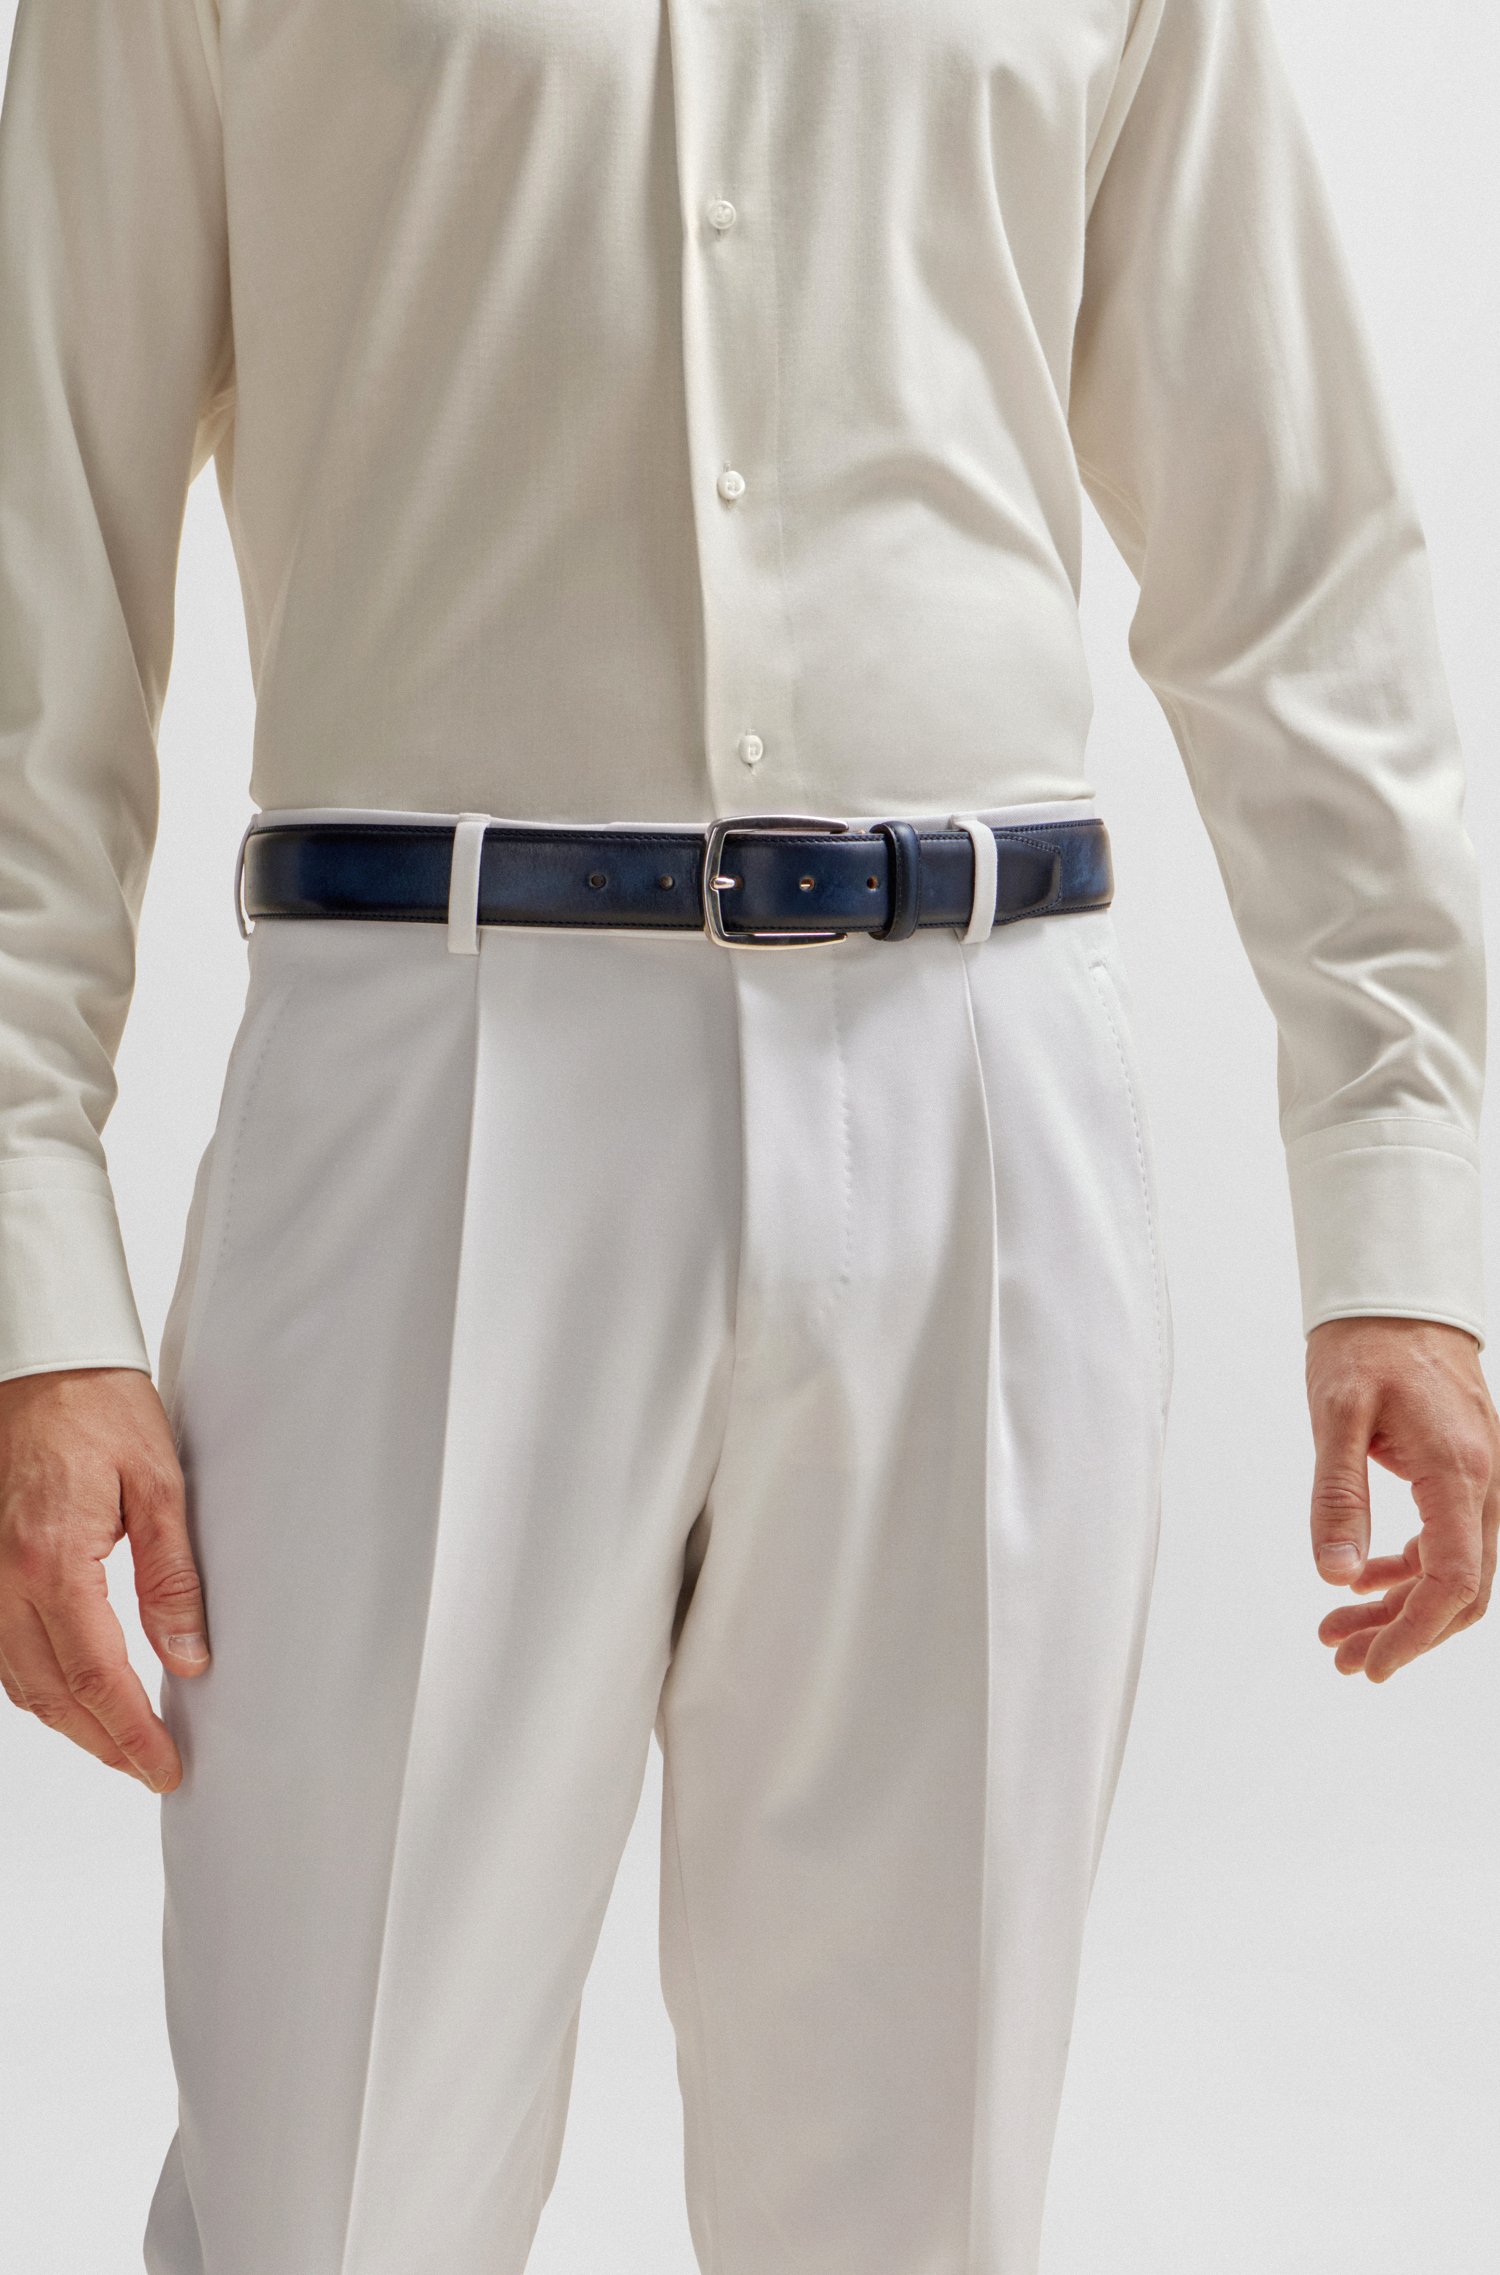 Cinturón de piel italiana con hebilla tono plateado